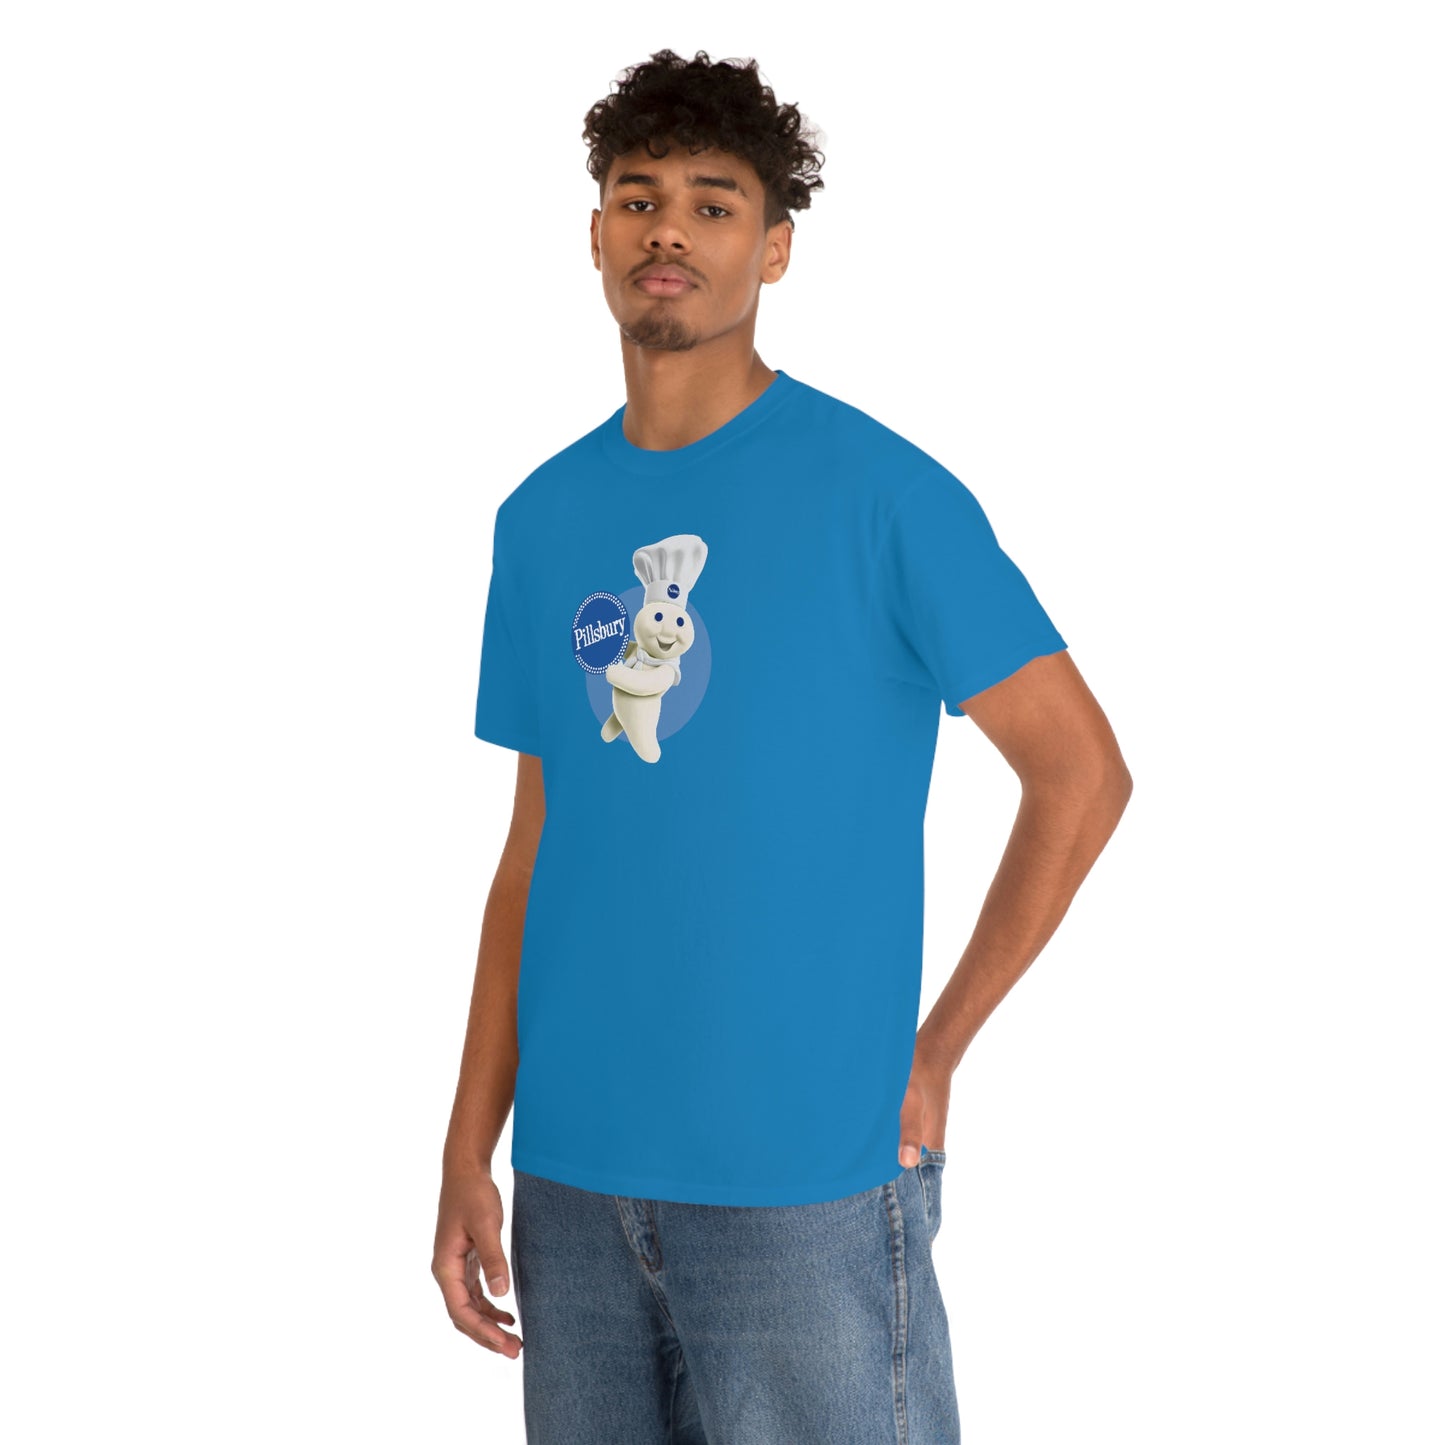 Pillsbury Doughboy T-Shirt